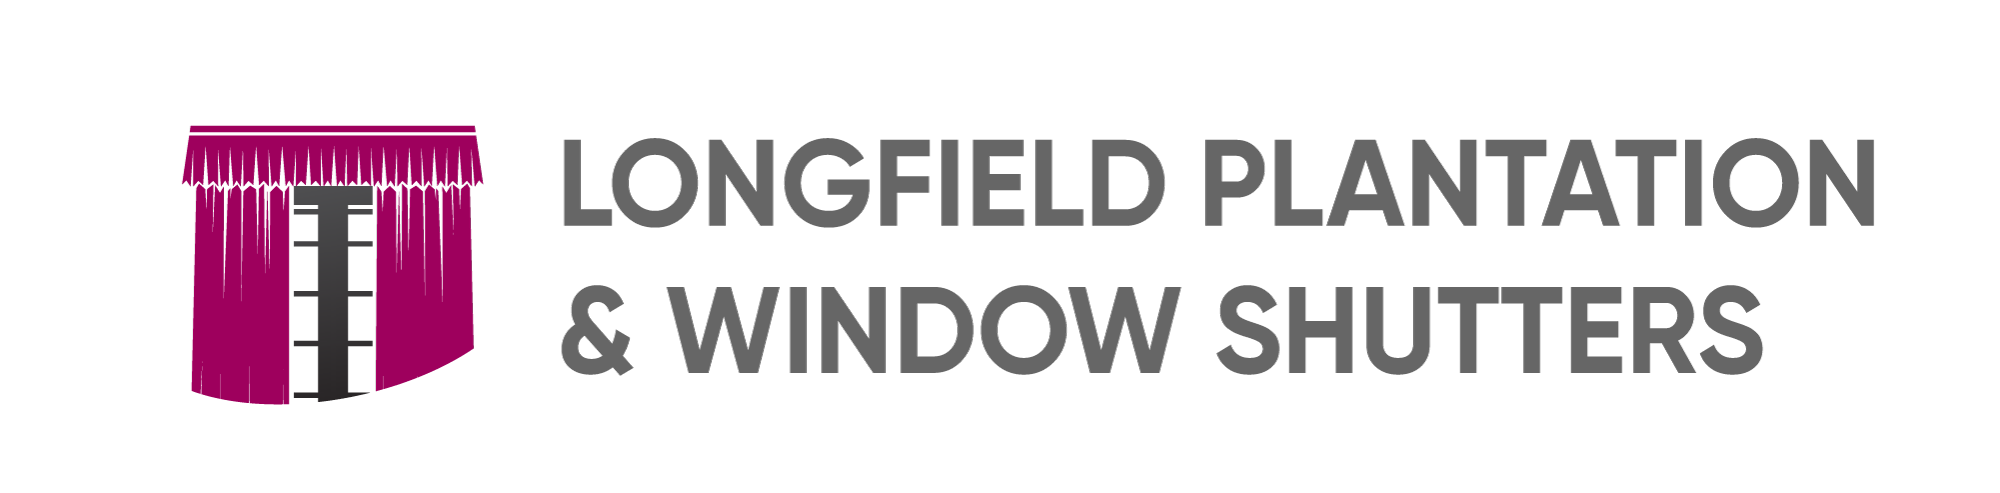 Longfield Plantation & Window Shutters